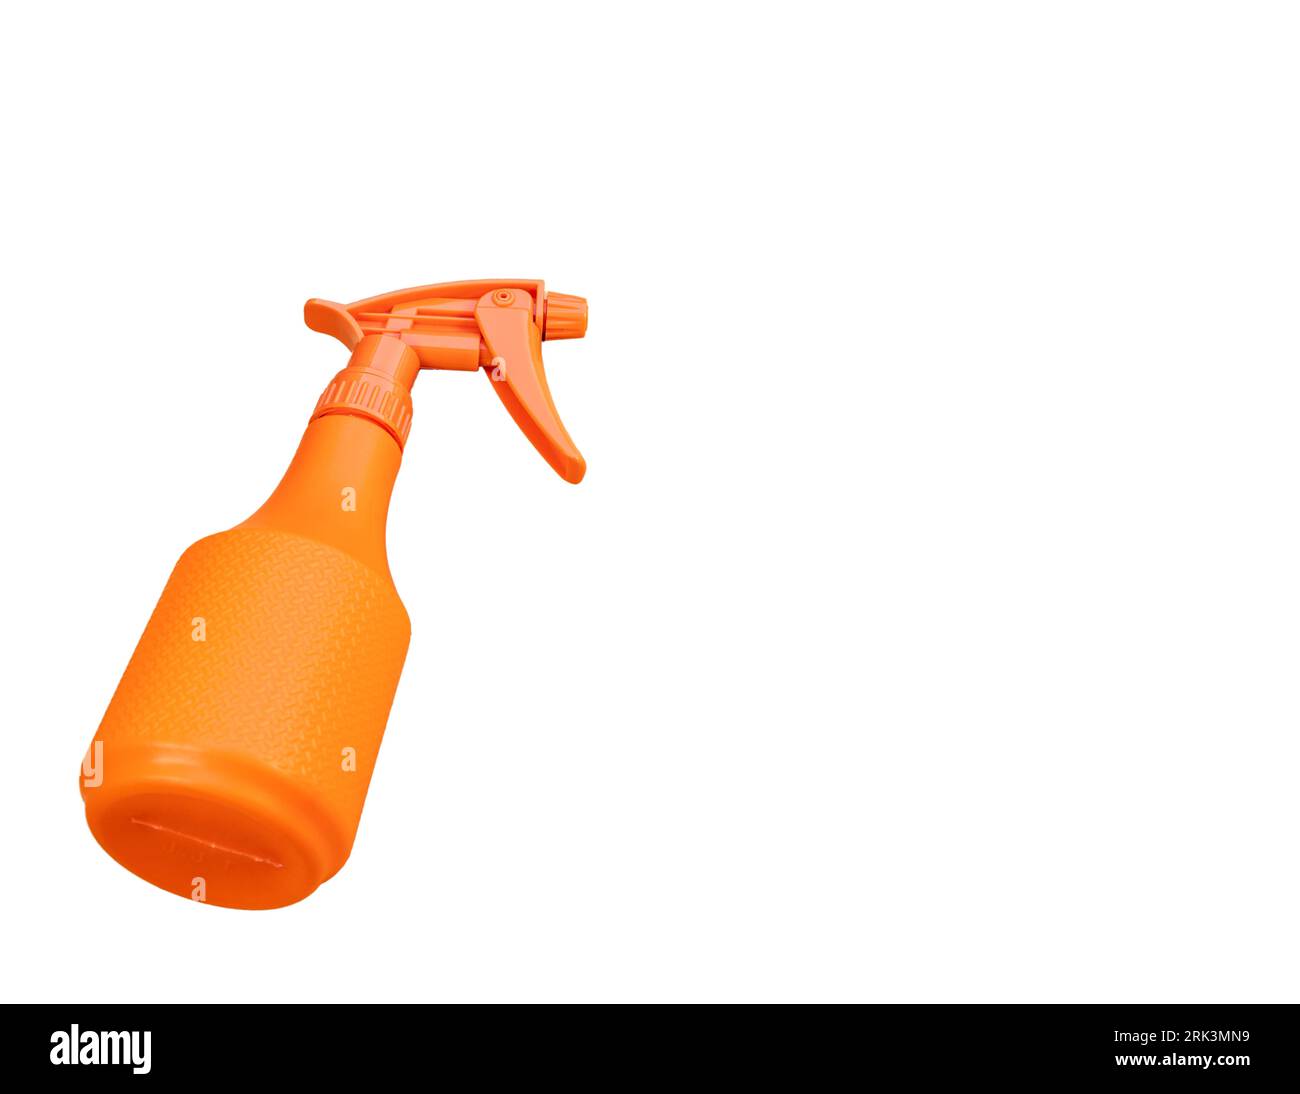 Orange sprayer bottle isolated on white background Stock Photo